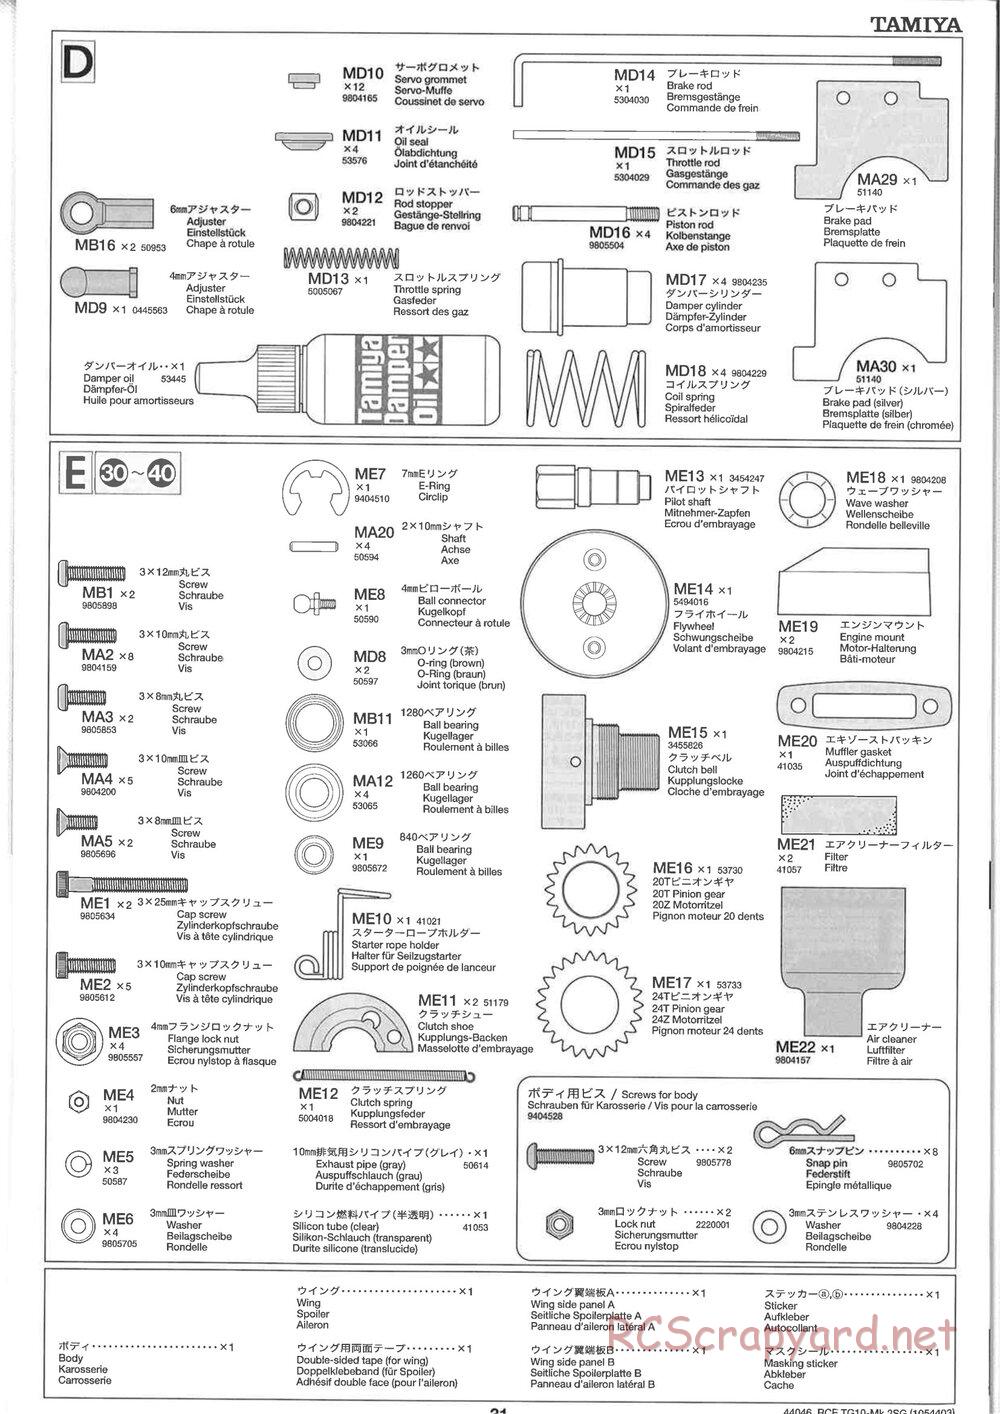 Tamiya - TG10 Mk.2SG Chassis - Manual - Page 31